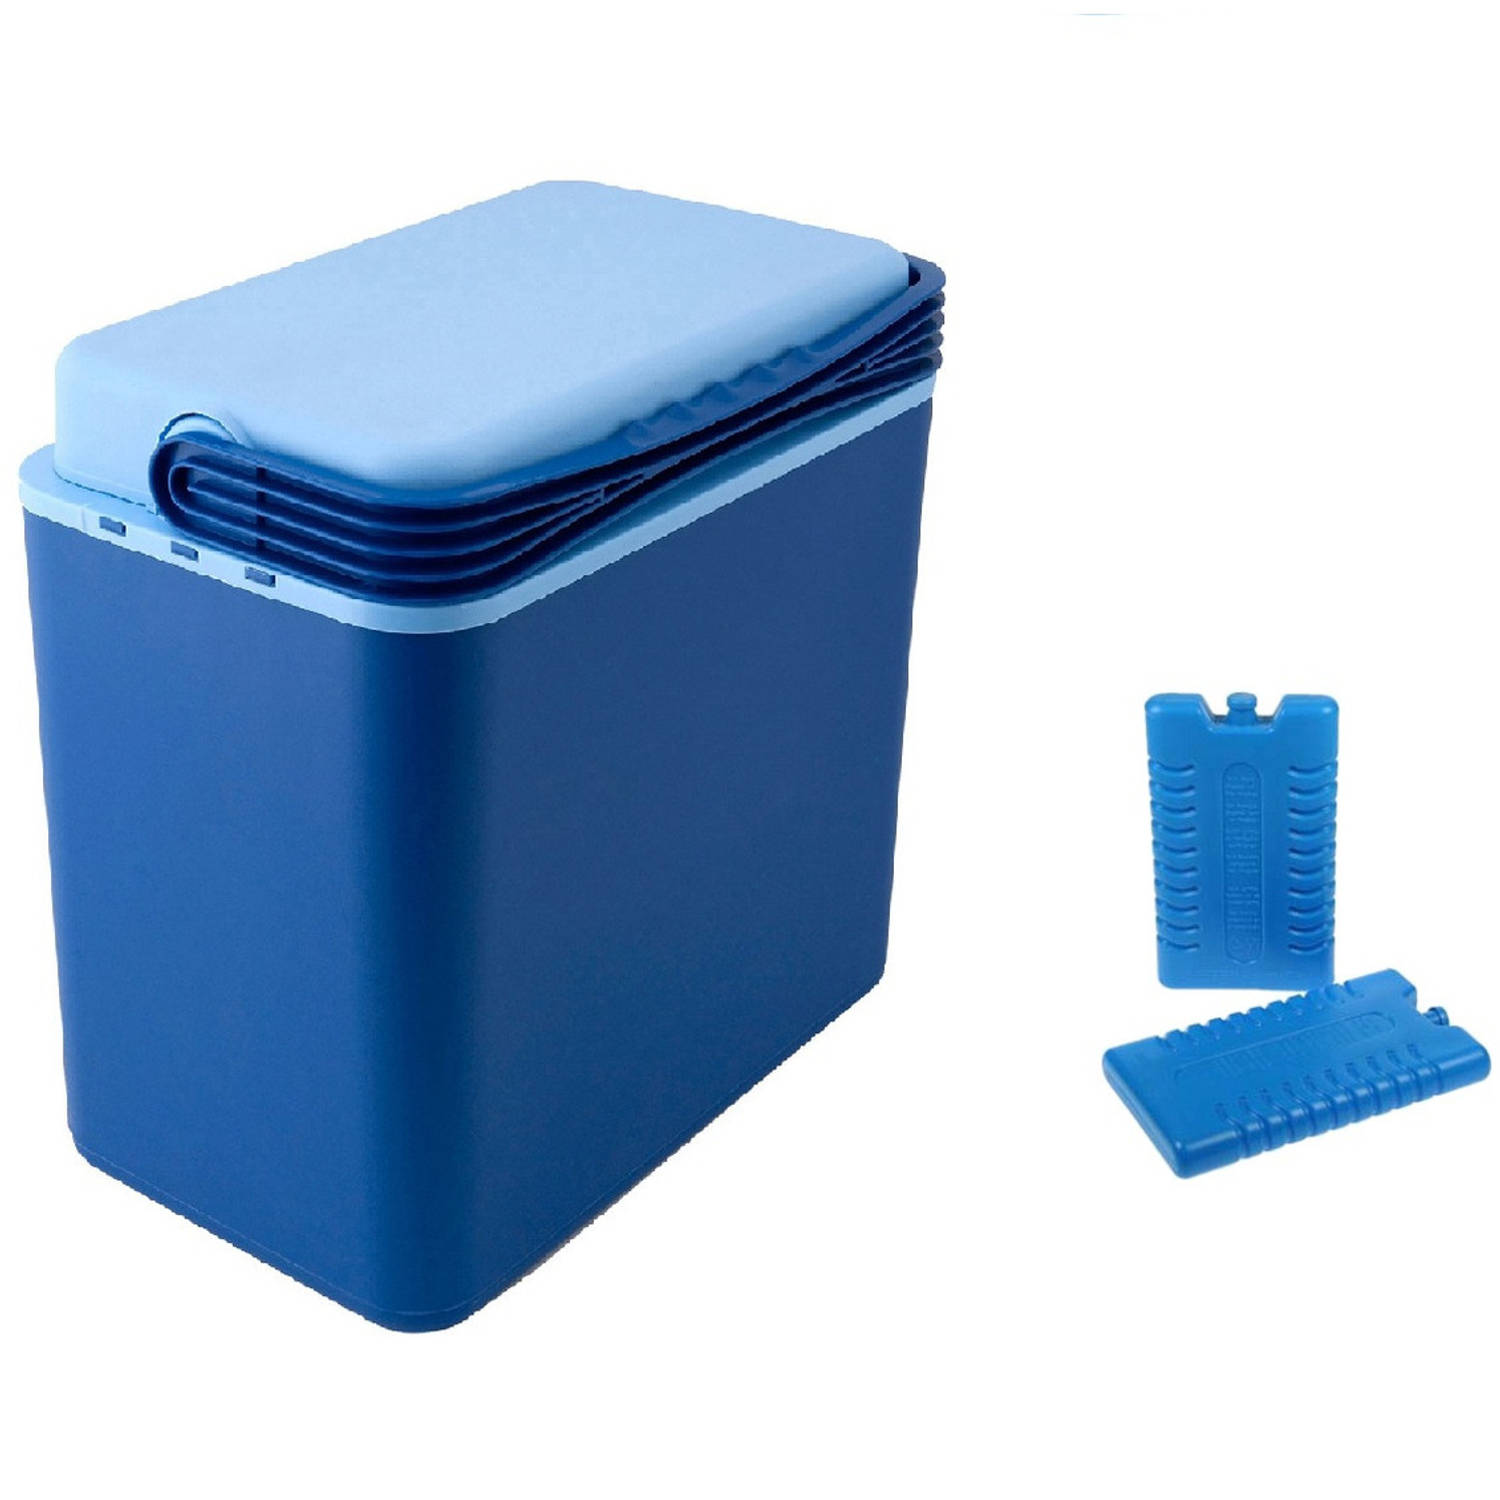 donkerblauw 24 liter 39 x 25 x 40 cm incl. 2 koelelementen - Koelboxen | Blokker